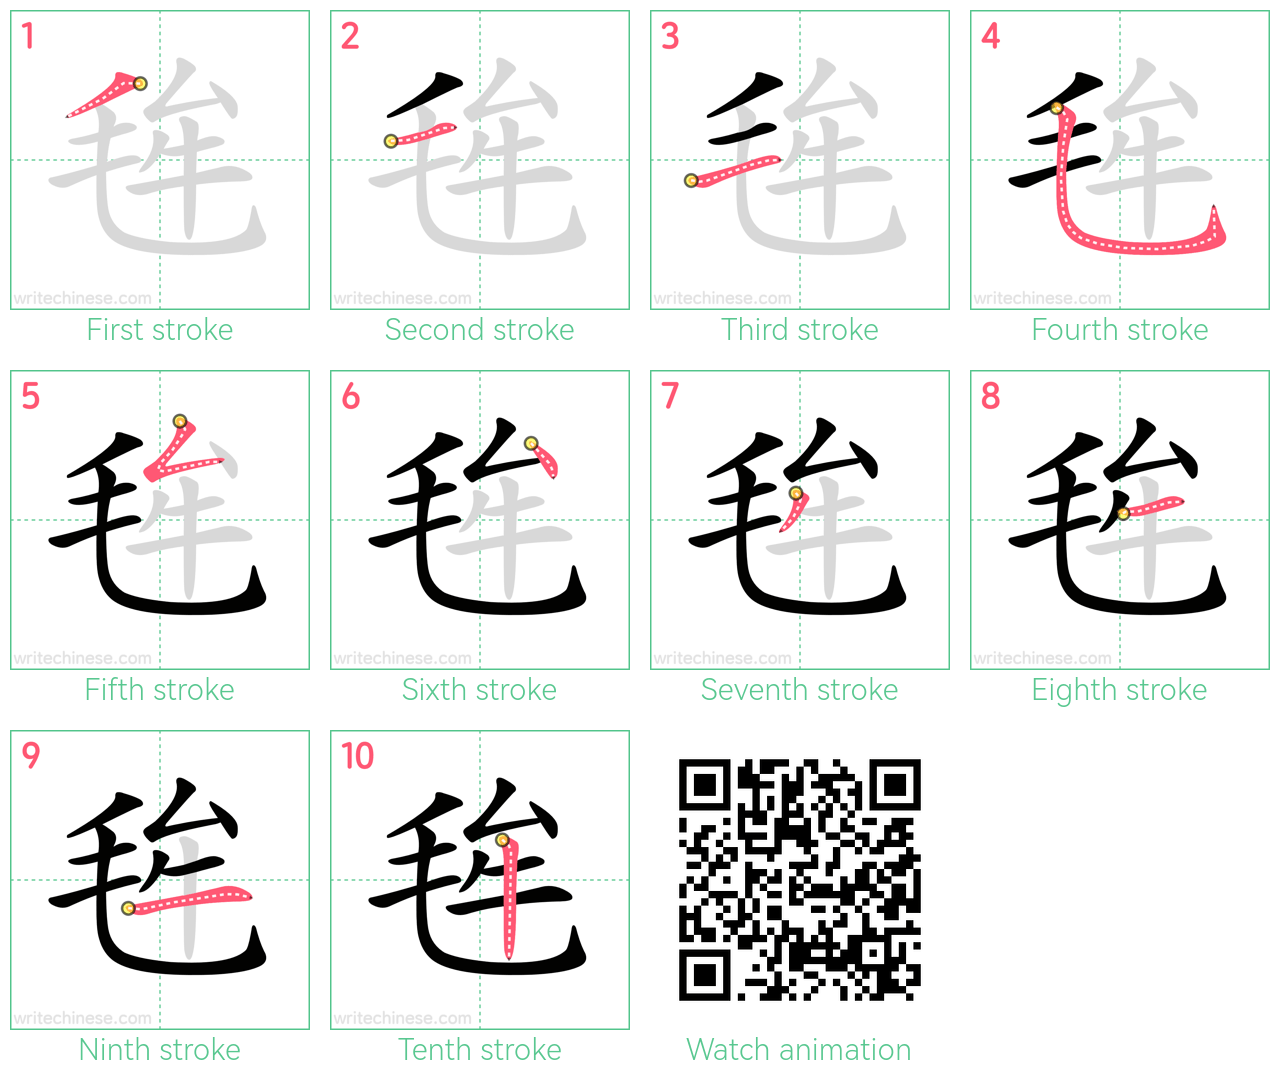 毪 step-by-step stroke order diagrams